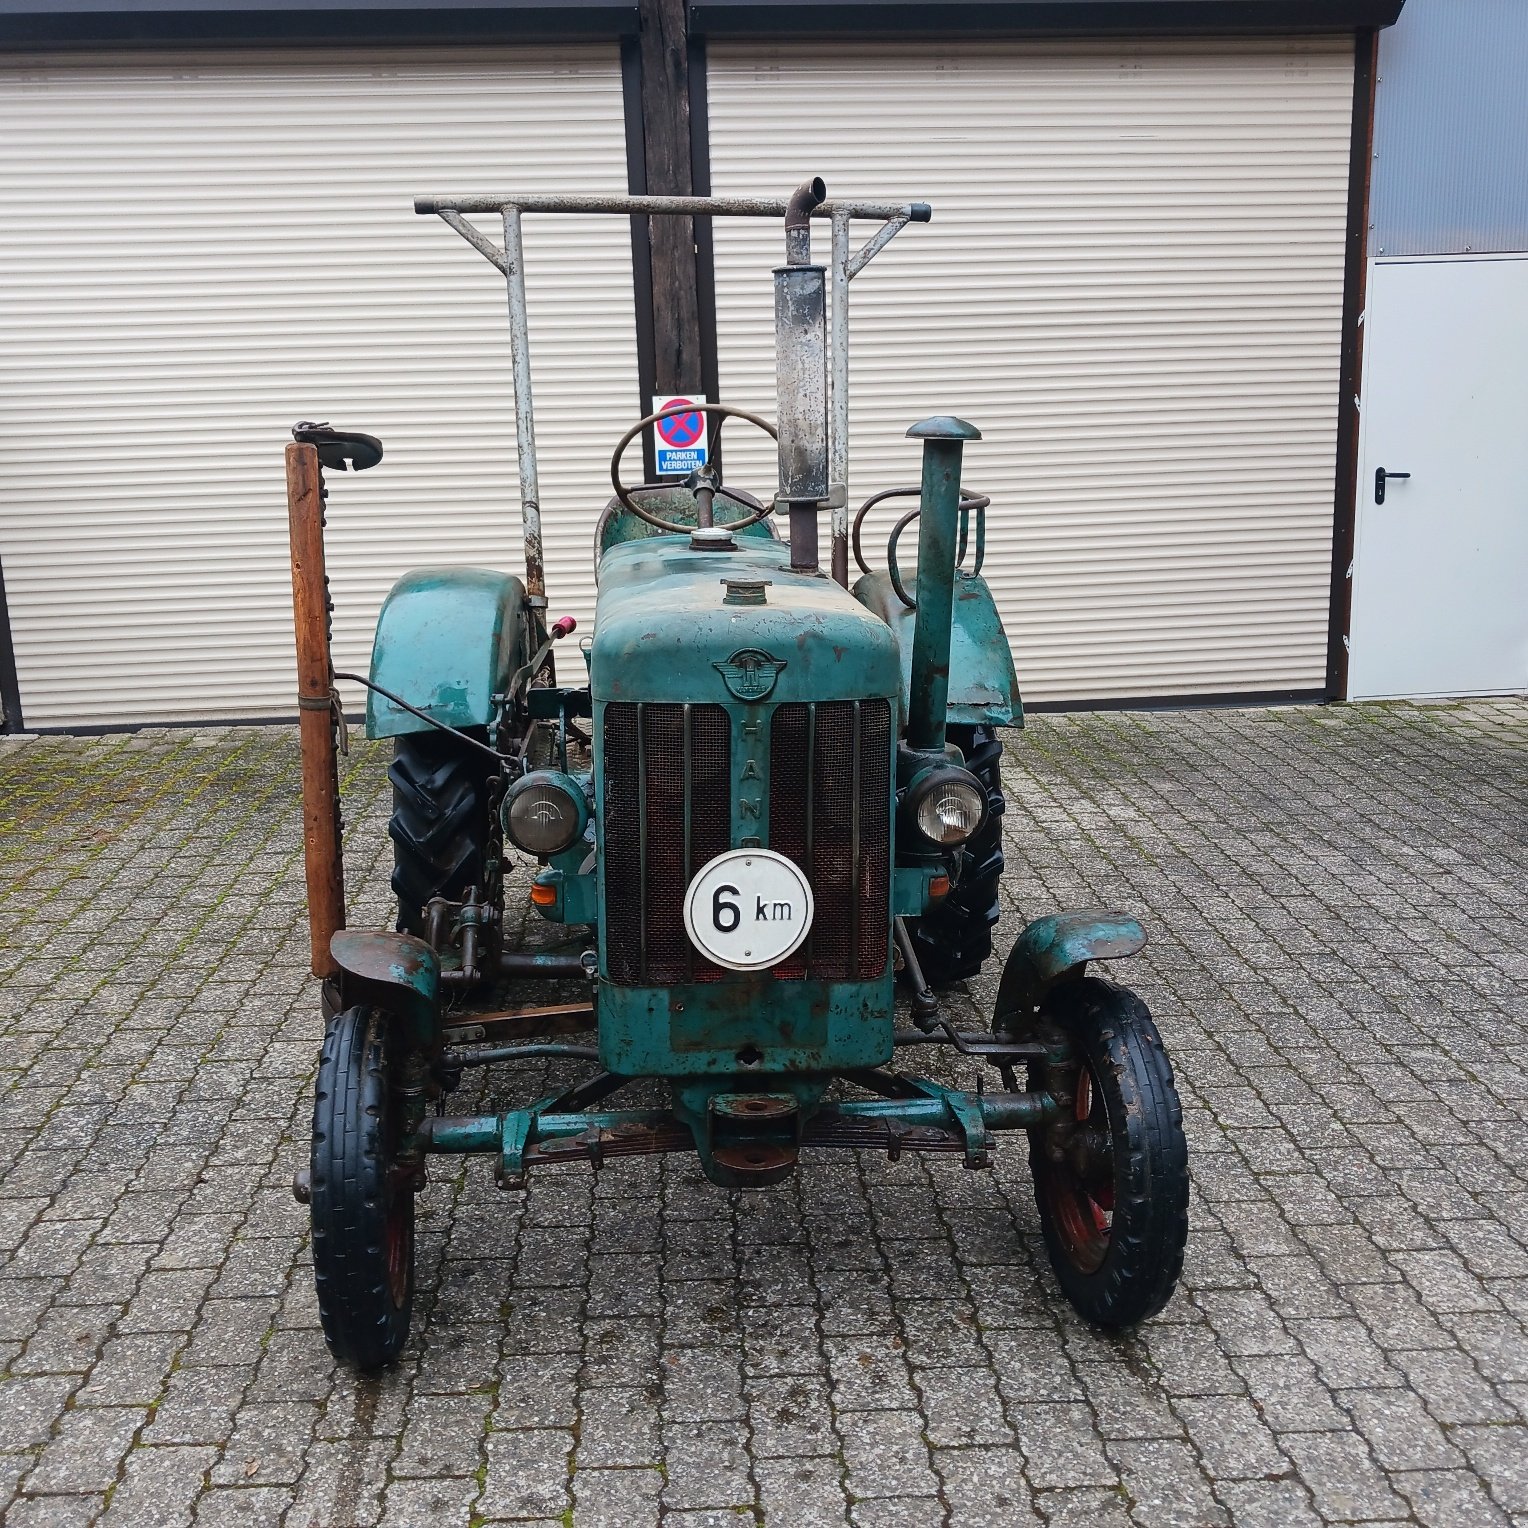 Traktor des Typs Hanomag R 16, Gebrauchtmaschine in Münstermaifeld (Bild 1)